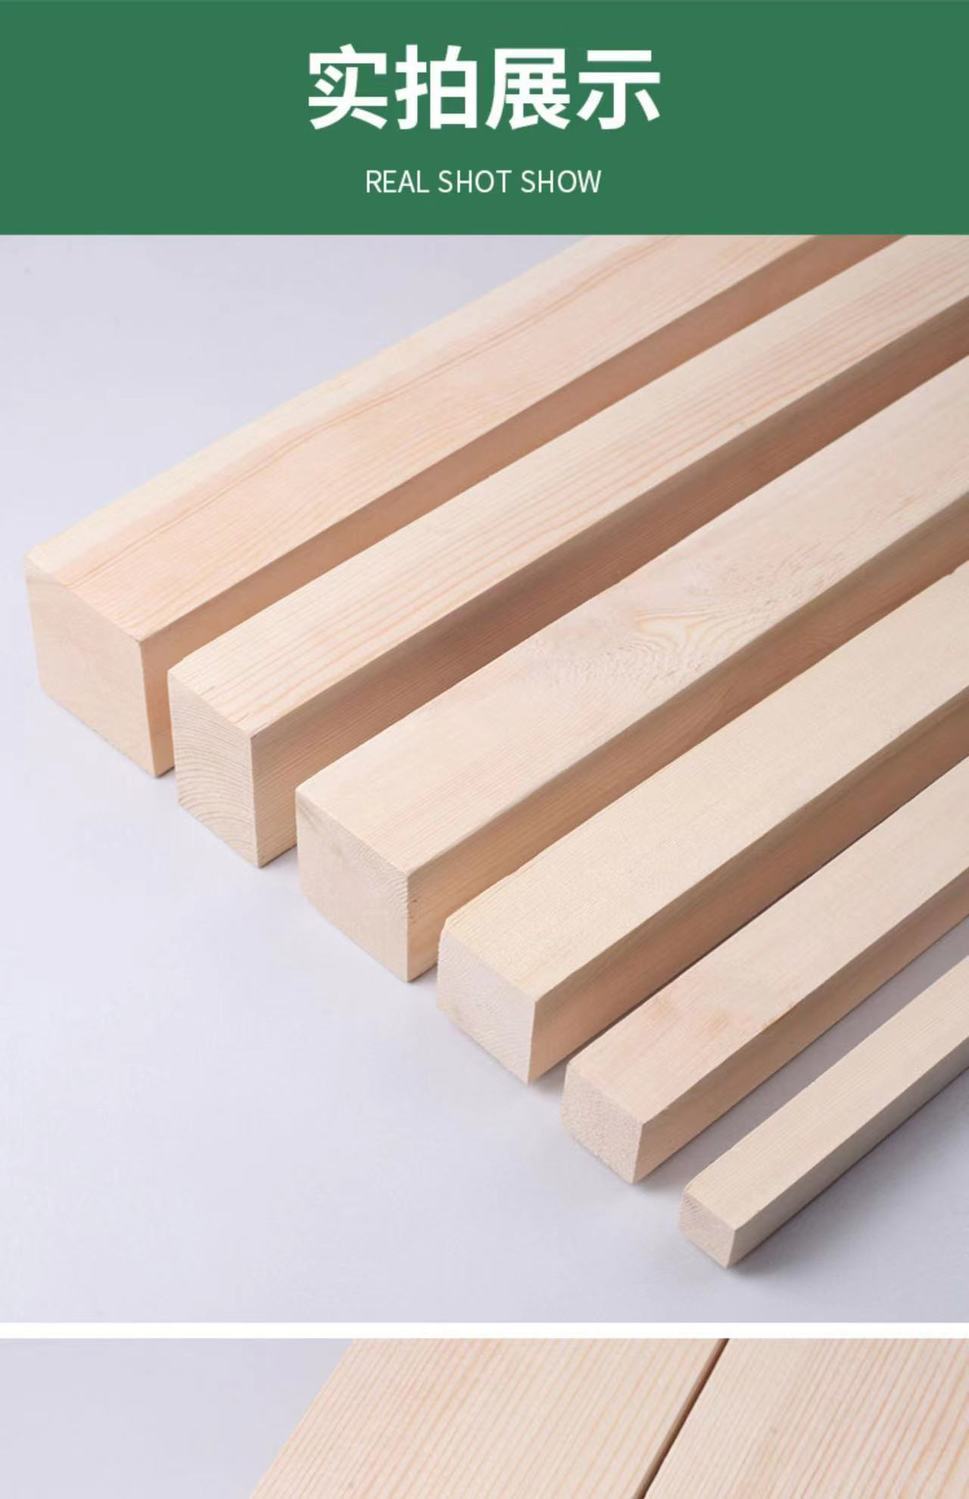 小型家具建筑模型木料原木块松木条实木材料定制木方条子木头块扁条